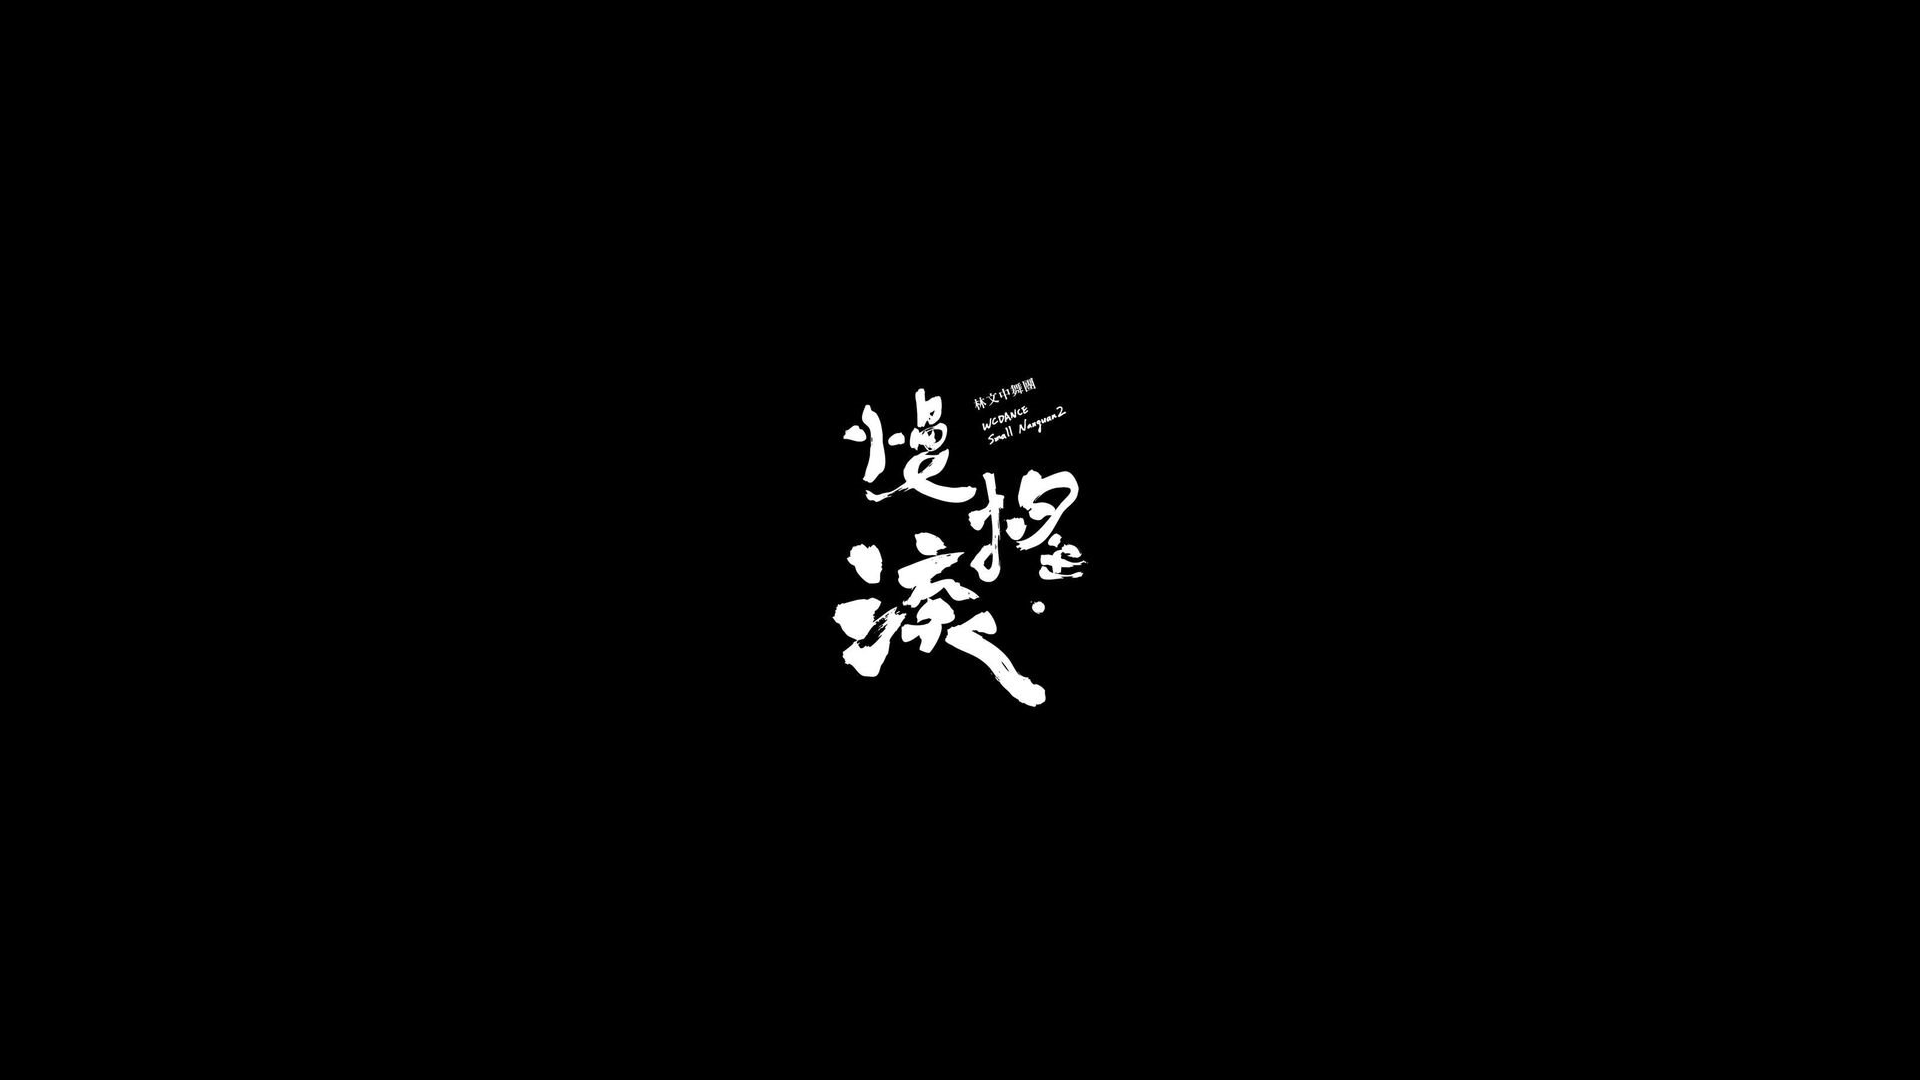 General 1920x1080 minimalism black kanji white Chinese